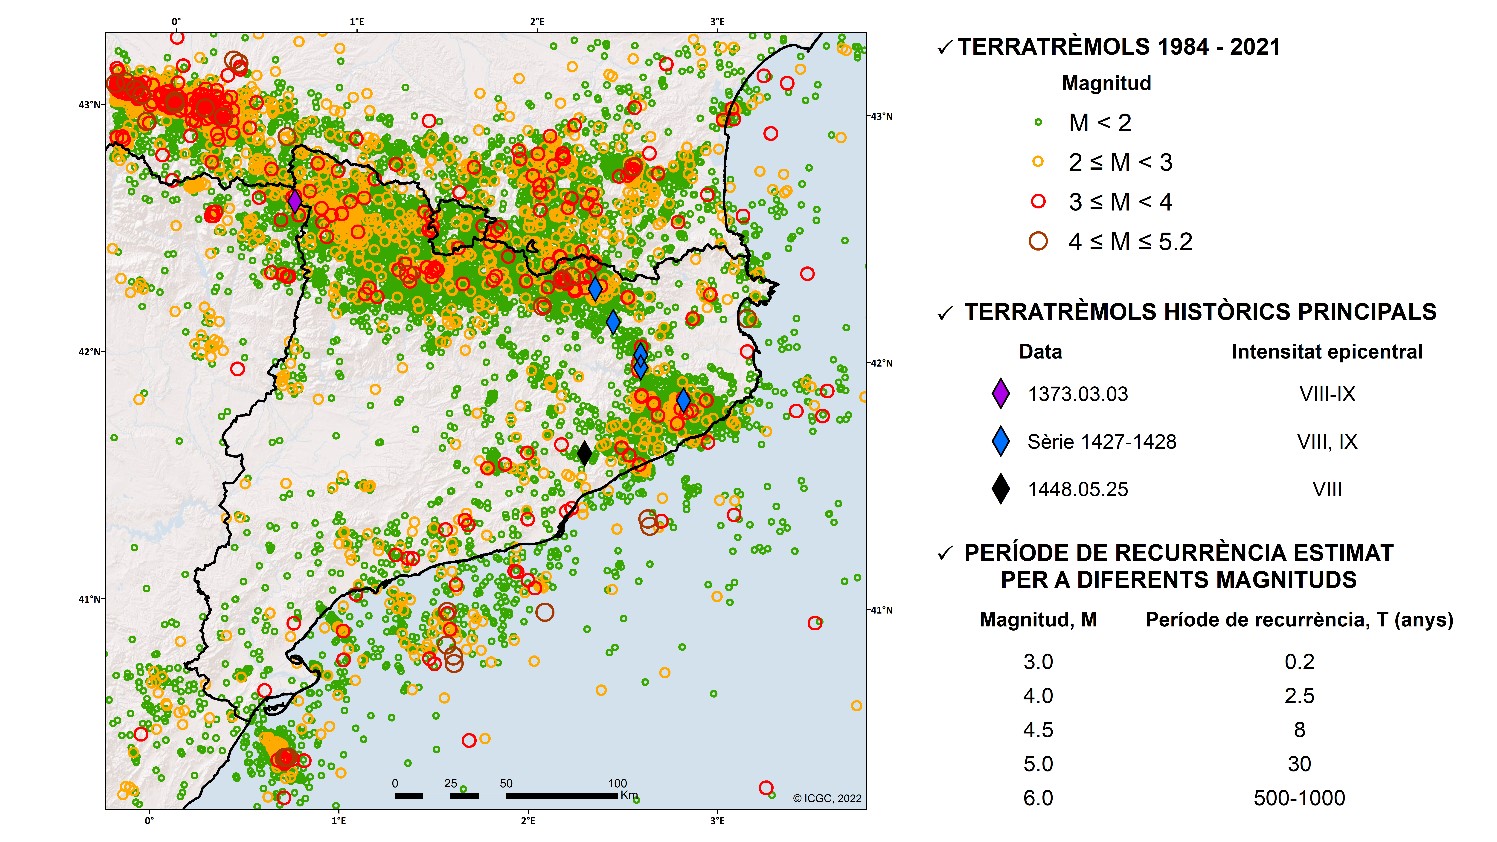 Sismicitat instrumental per al període 1984-2021 amb els terratrèmols històrics més importants caracteritzats a partir d’enregistraments macrosísmics. També es mostra el període de recurrència estimat per a diferents magnituds.